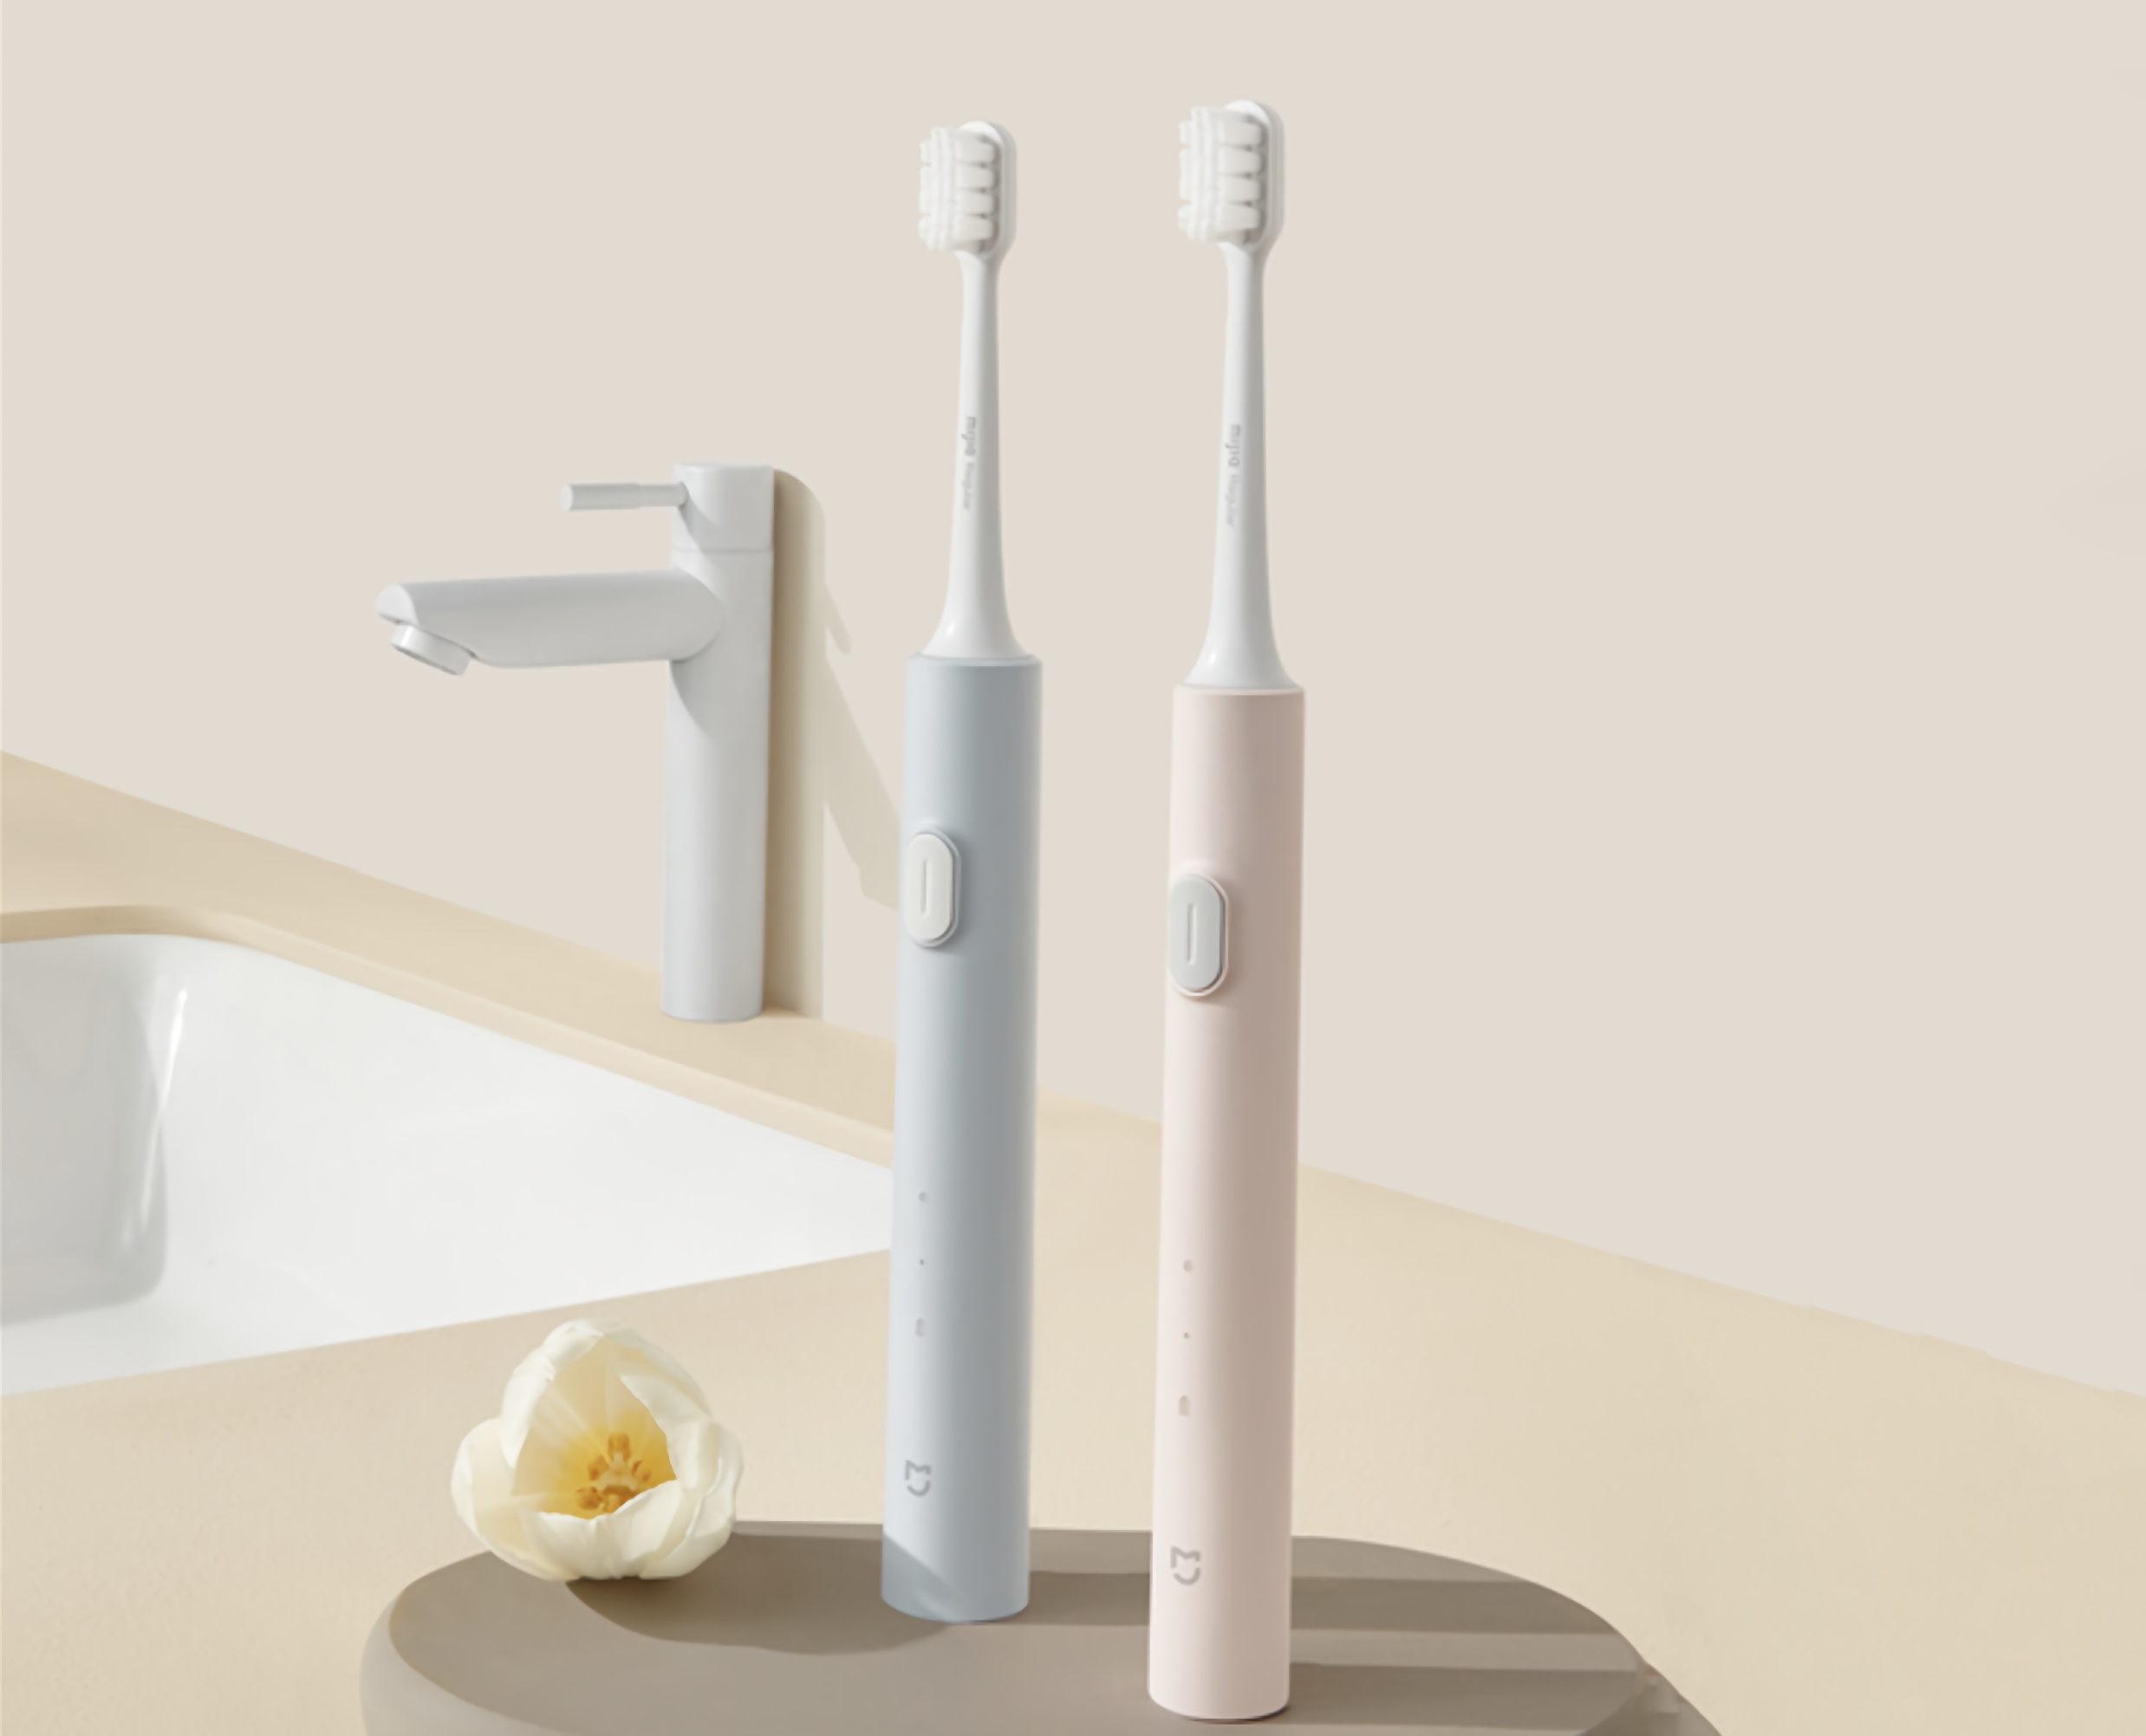 MiJia T200 Sonic Electric Toothbrush: uno spazzolino elettrico dell'ecosistema Xiaomi con un'autonomia fino a 25 giorni